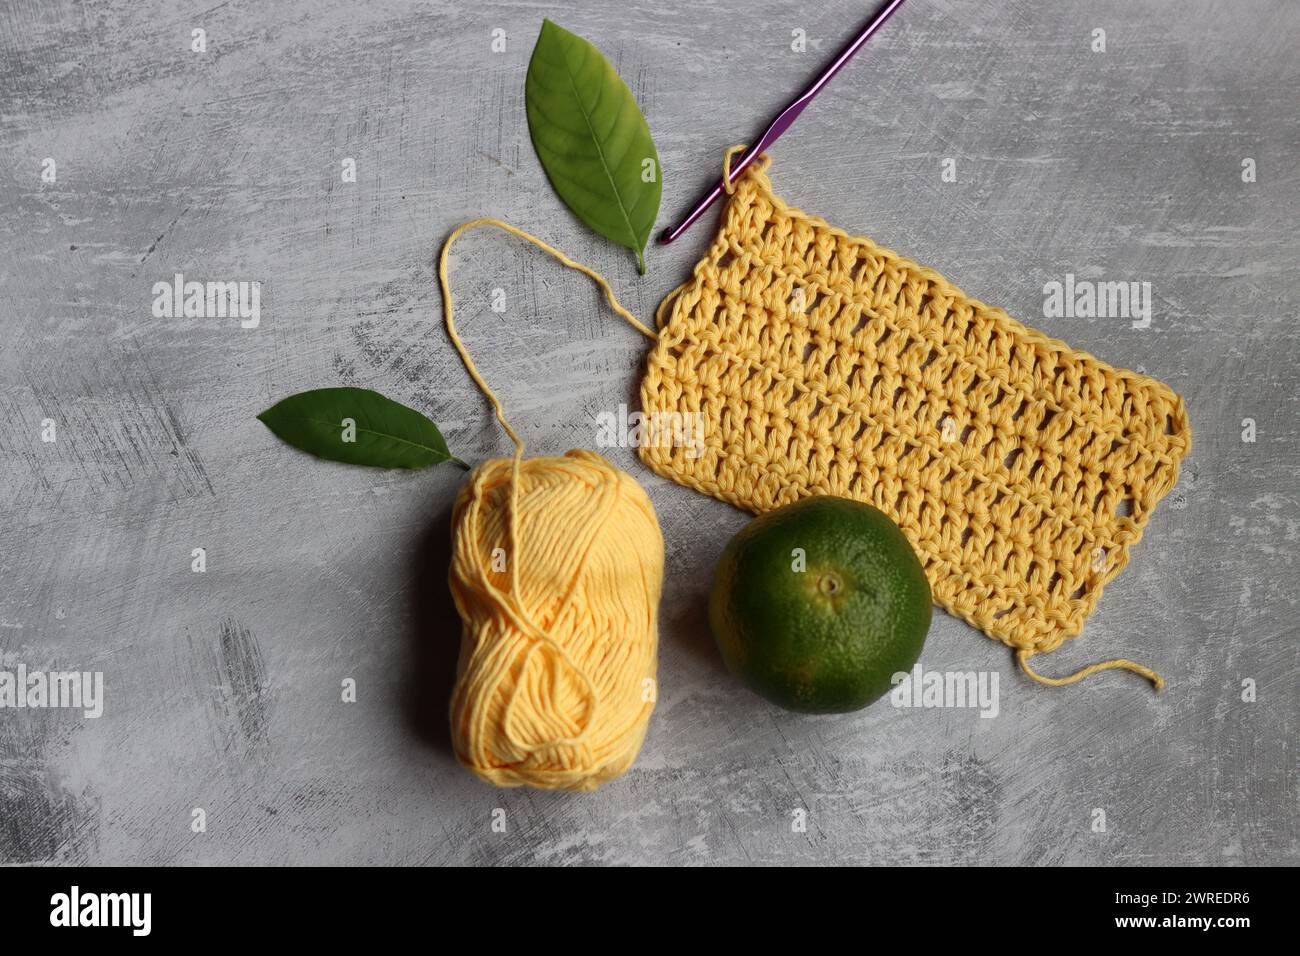 Crochet écharpe en cours. Crochet crochet, fil de coton jaune, citron vert et feuilles sur fond gris, vue de dessus Banque D'Images